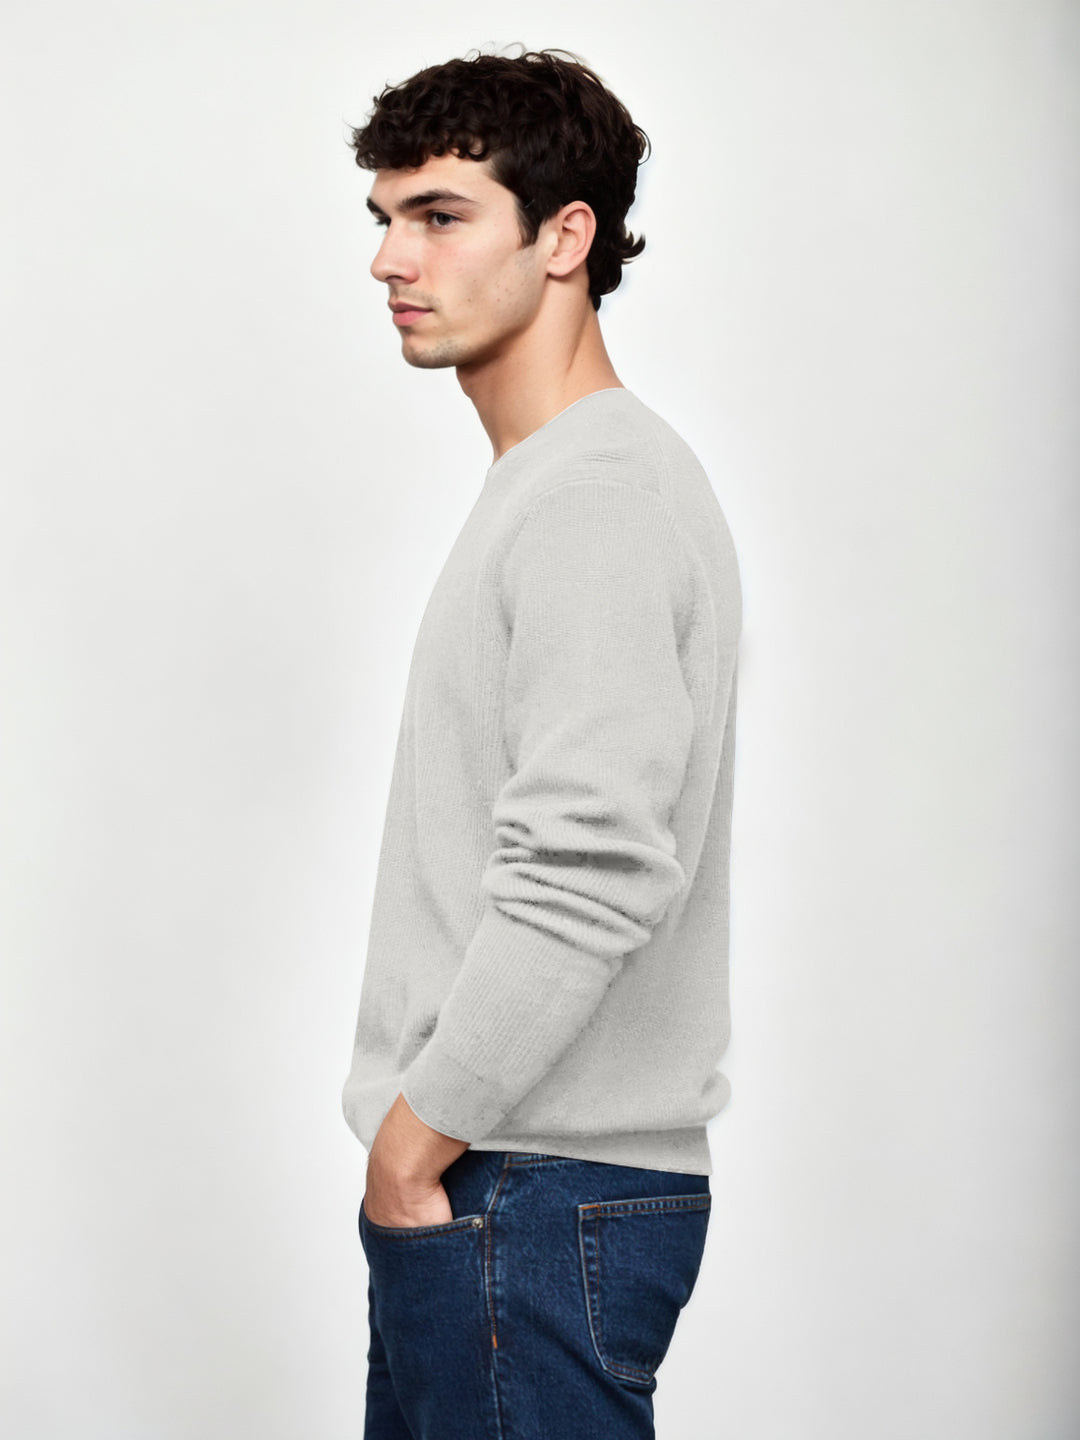 Hemsters Light grey Knitted Full Sleevs Sweatshirt For Men